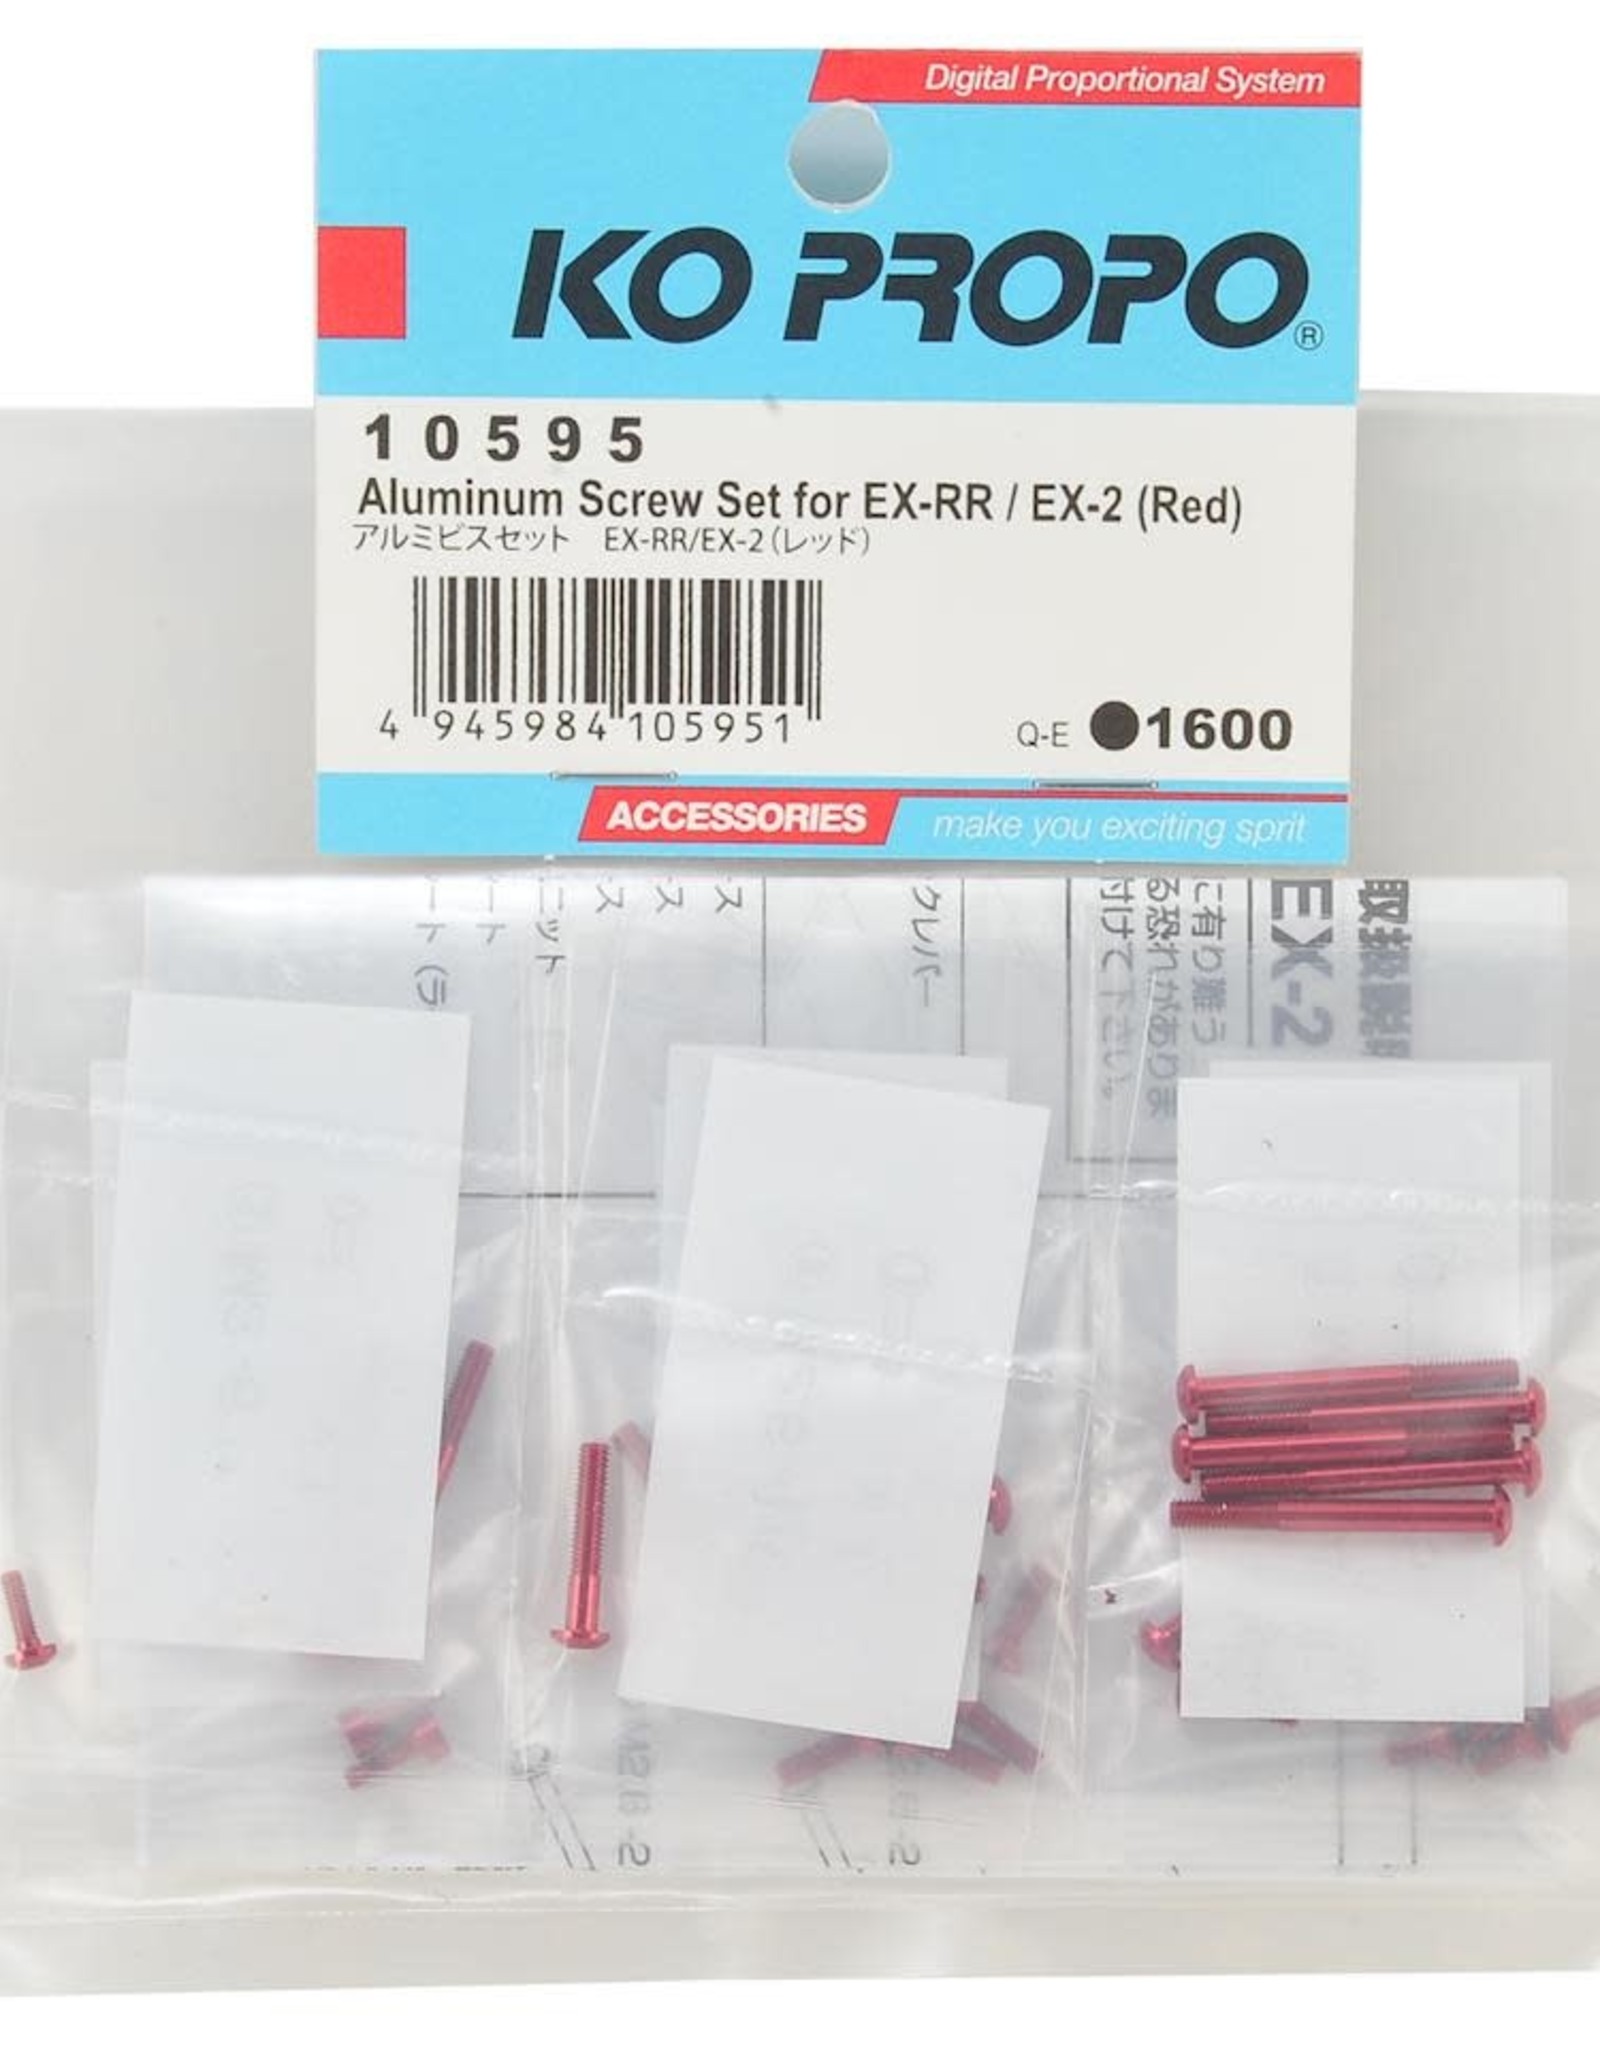 KO Propo KO Propo EX-RR/EX-2 Aluminum Screw Set (Red).